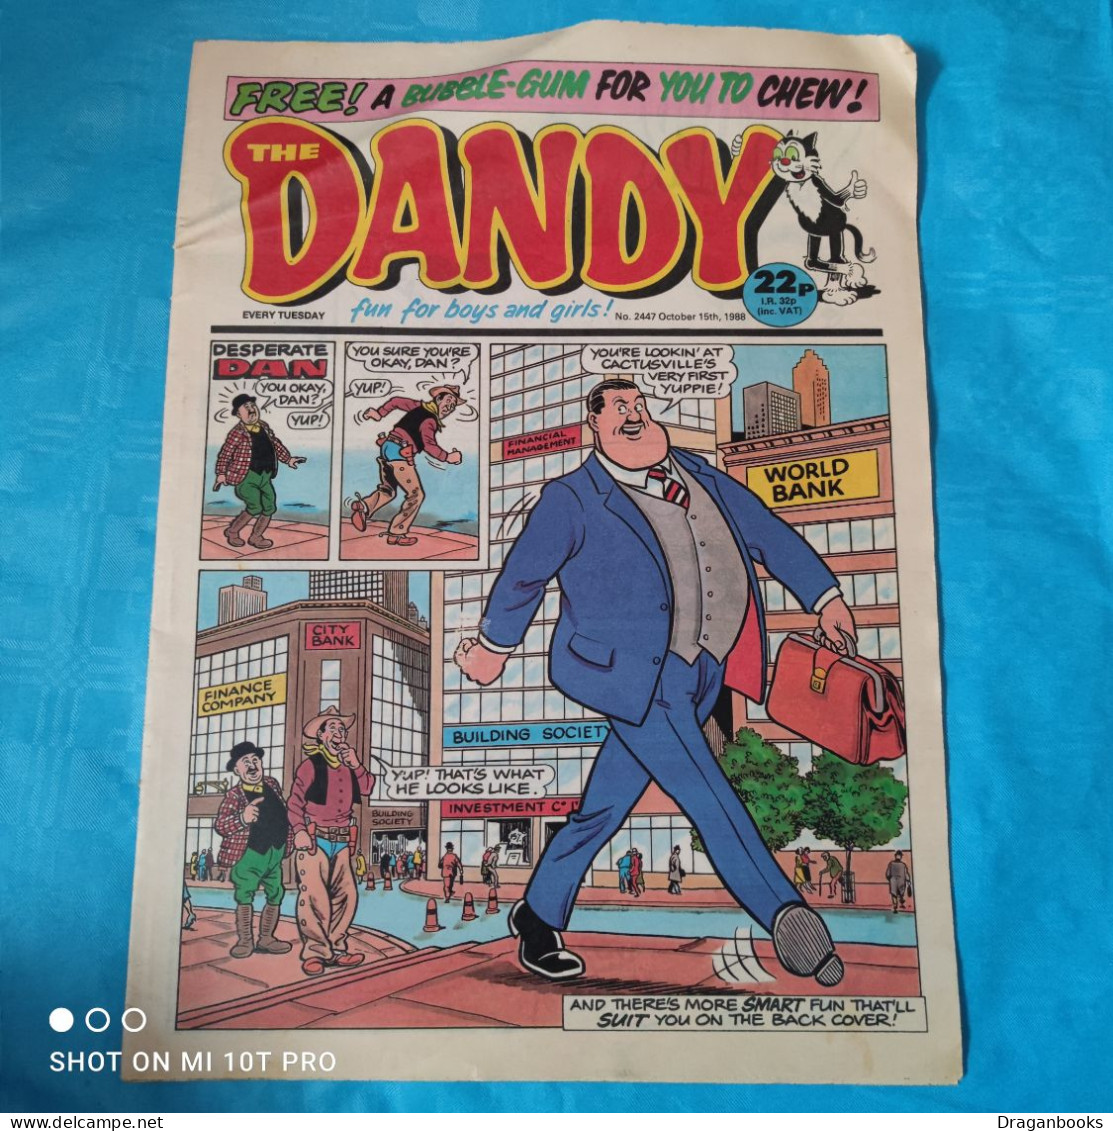 The Dandy No. 2447 - October 15th 1988 - Fumetti Giornali